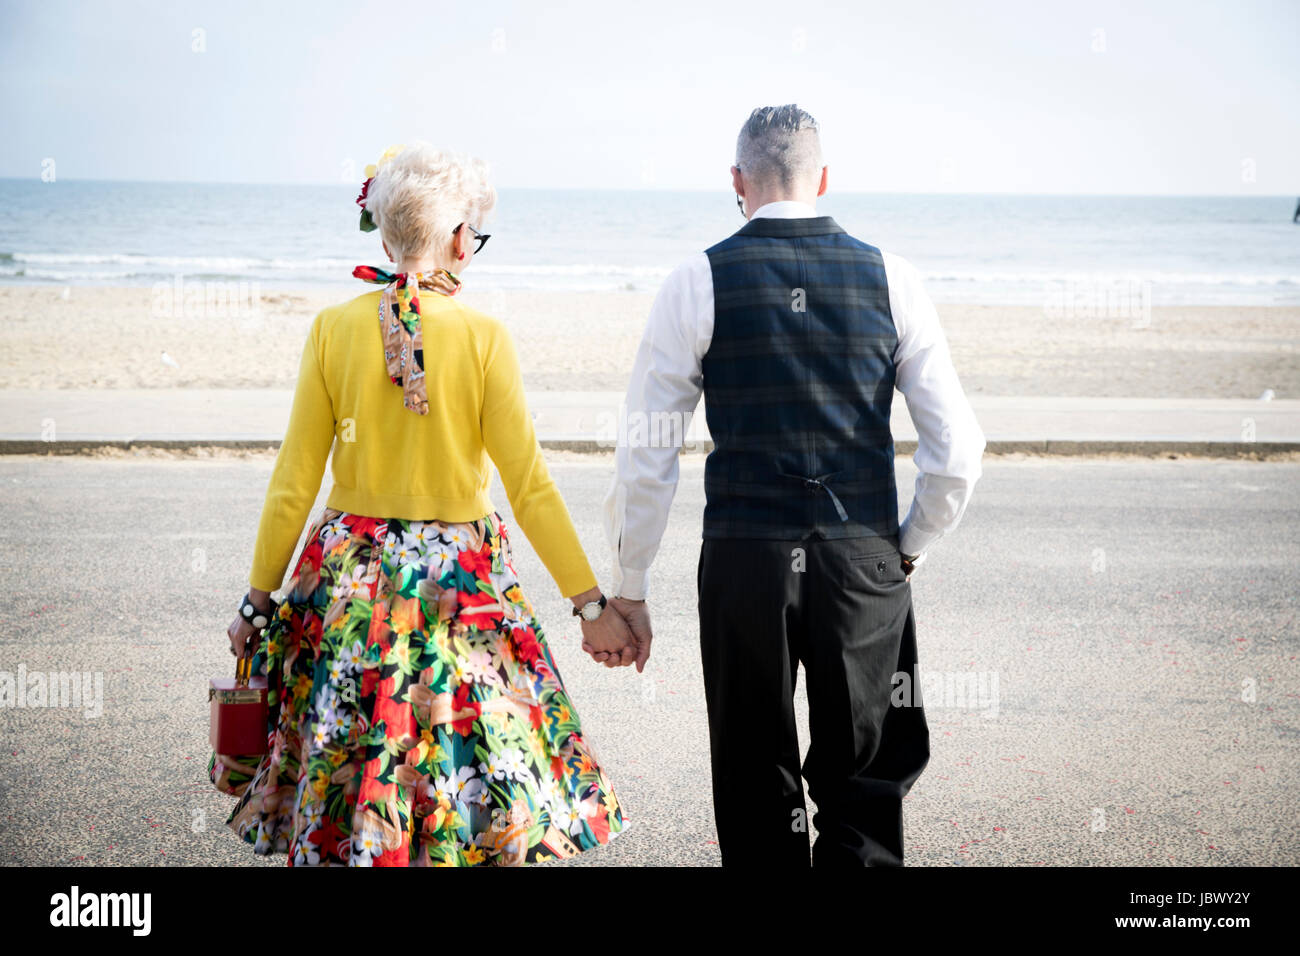 Vue arrière du style années 50 vintage couple holding hands and strolling on beach Banque D'Images